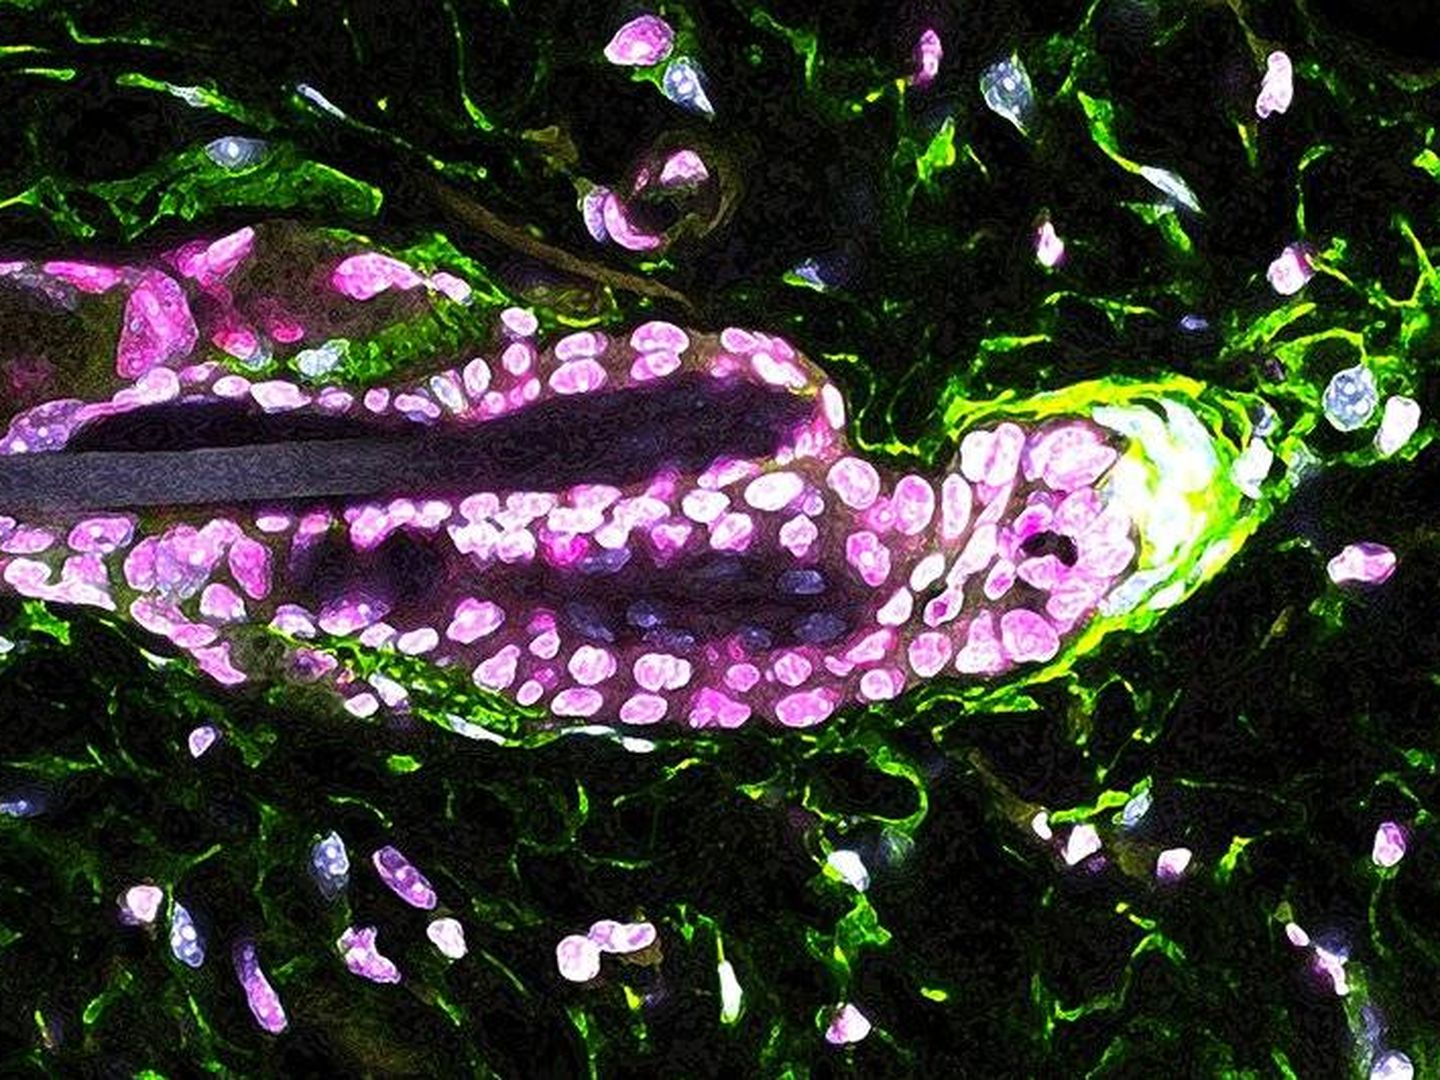 Las células de la papila dérmica (verde) producen la molécula GAS6 que activa las células madre del folículo piloso. (Laboratorio Hsu, Universidad de Harvard)